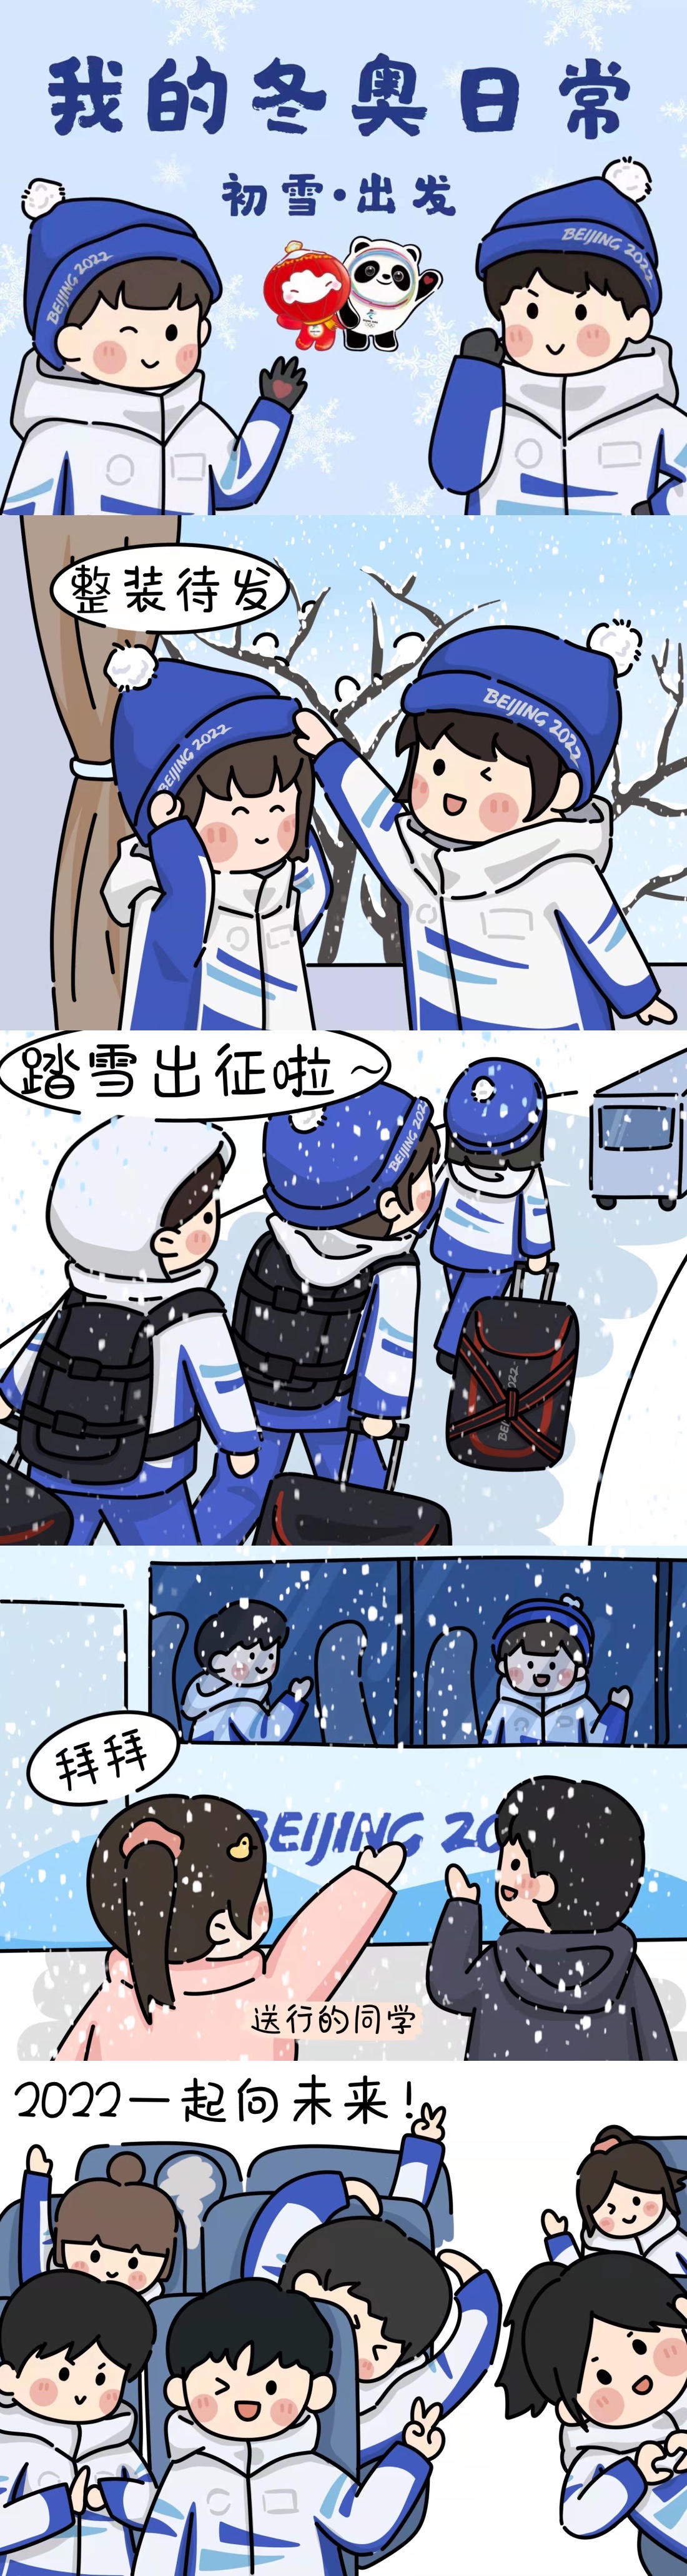 【冬奥有我·我的冬奥日常①】漫画丨2022初雪·出发